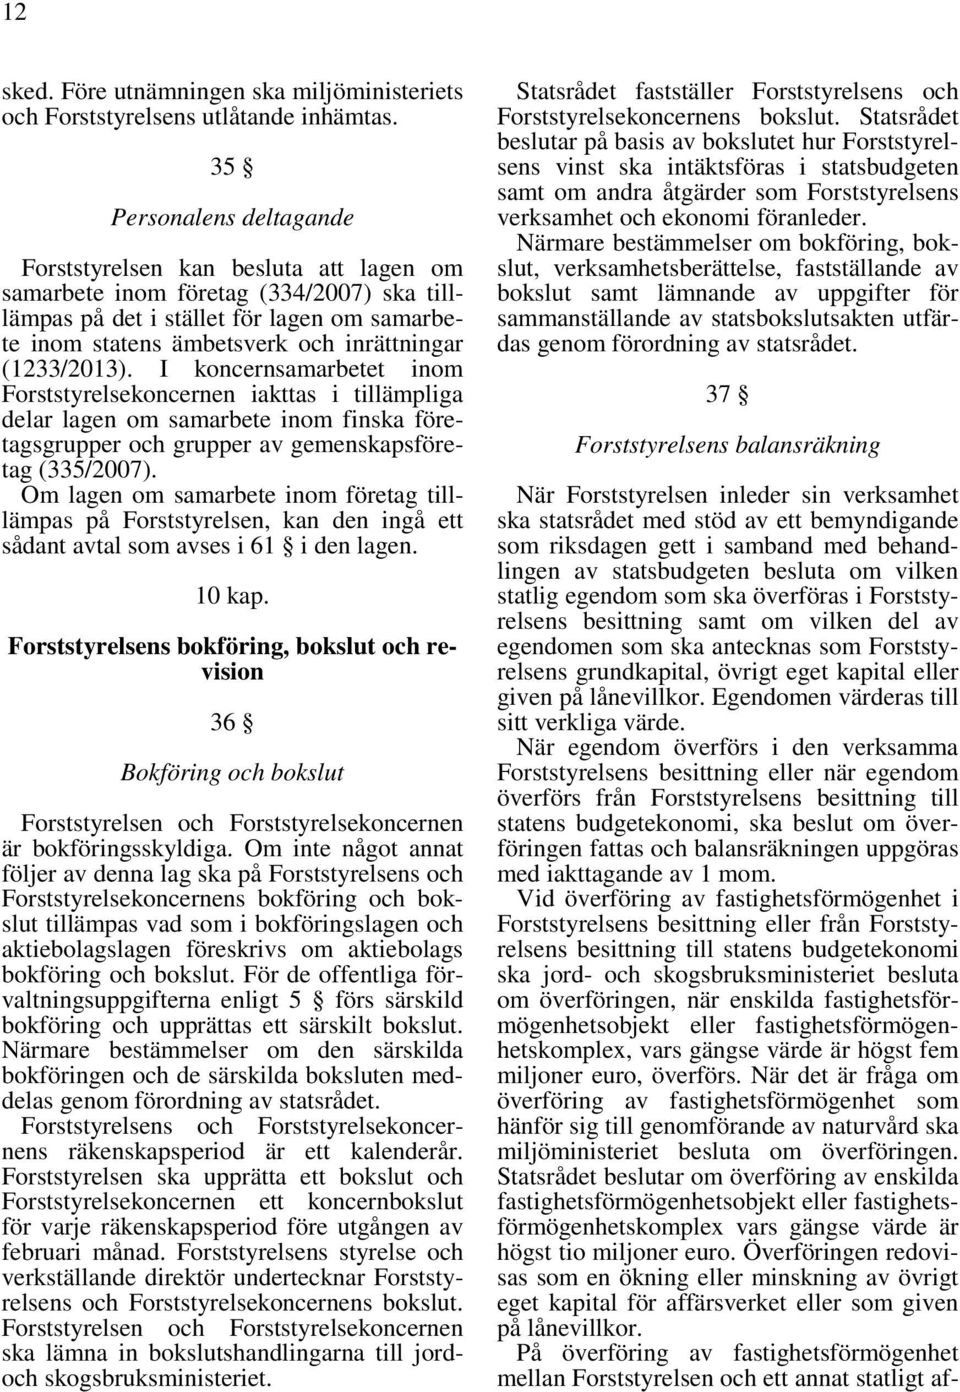 (1233/2013). I koncernsamarbetet inom Forststyrelsekoncernen iakttas i tillämpliga delar lagen om samarbete inom finska företagsgrupper och grupper av gemenskapsföretag (335/2007).